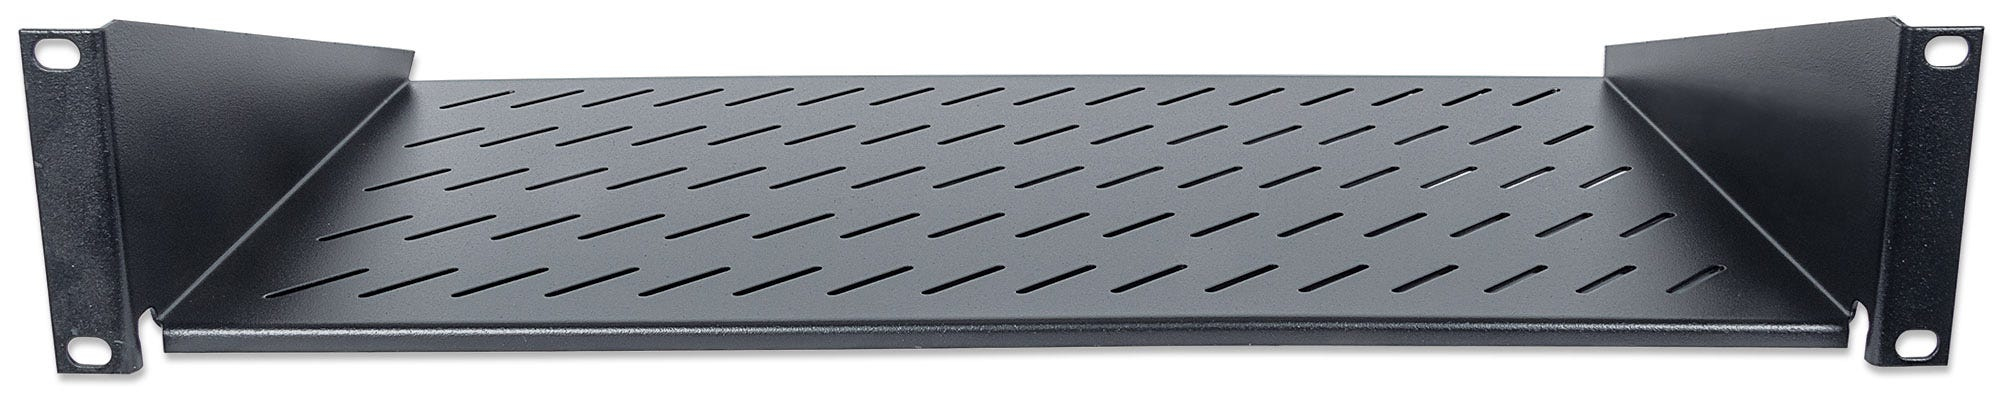 Intellinet 19" Cantilever Shelf, 2U, 2-Point Front Mount, 250mm Depth, Black